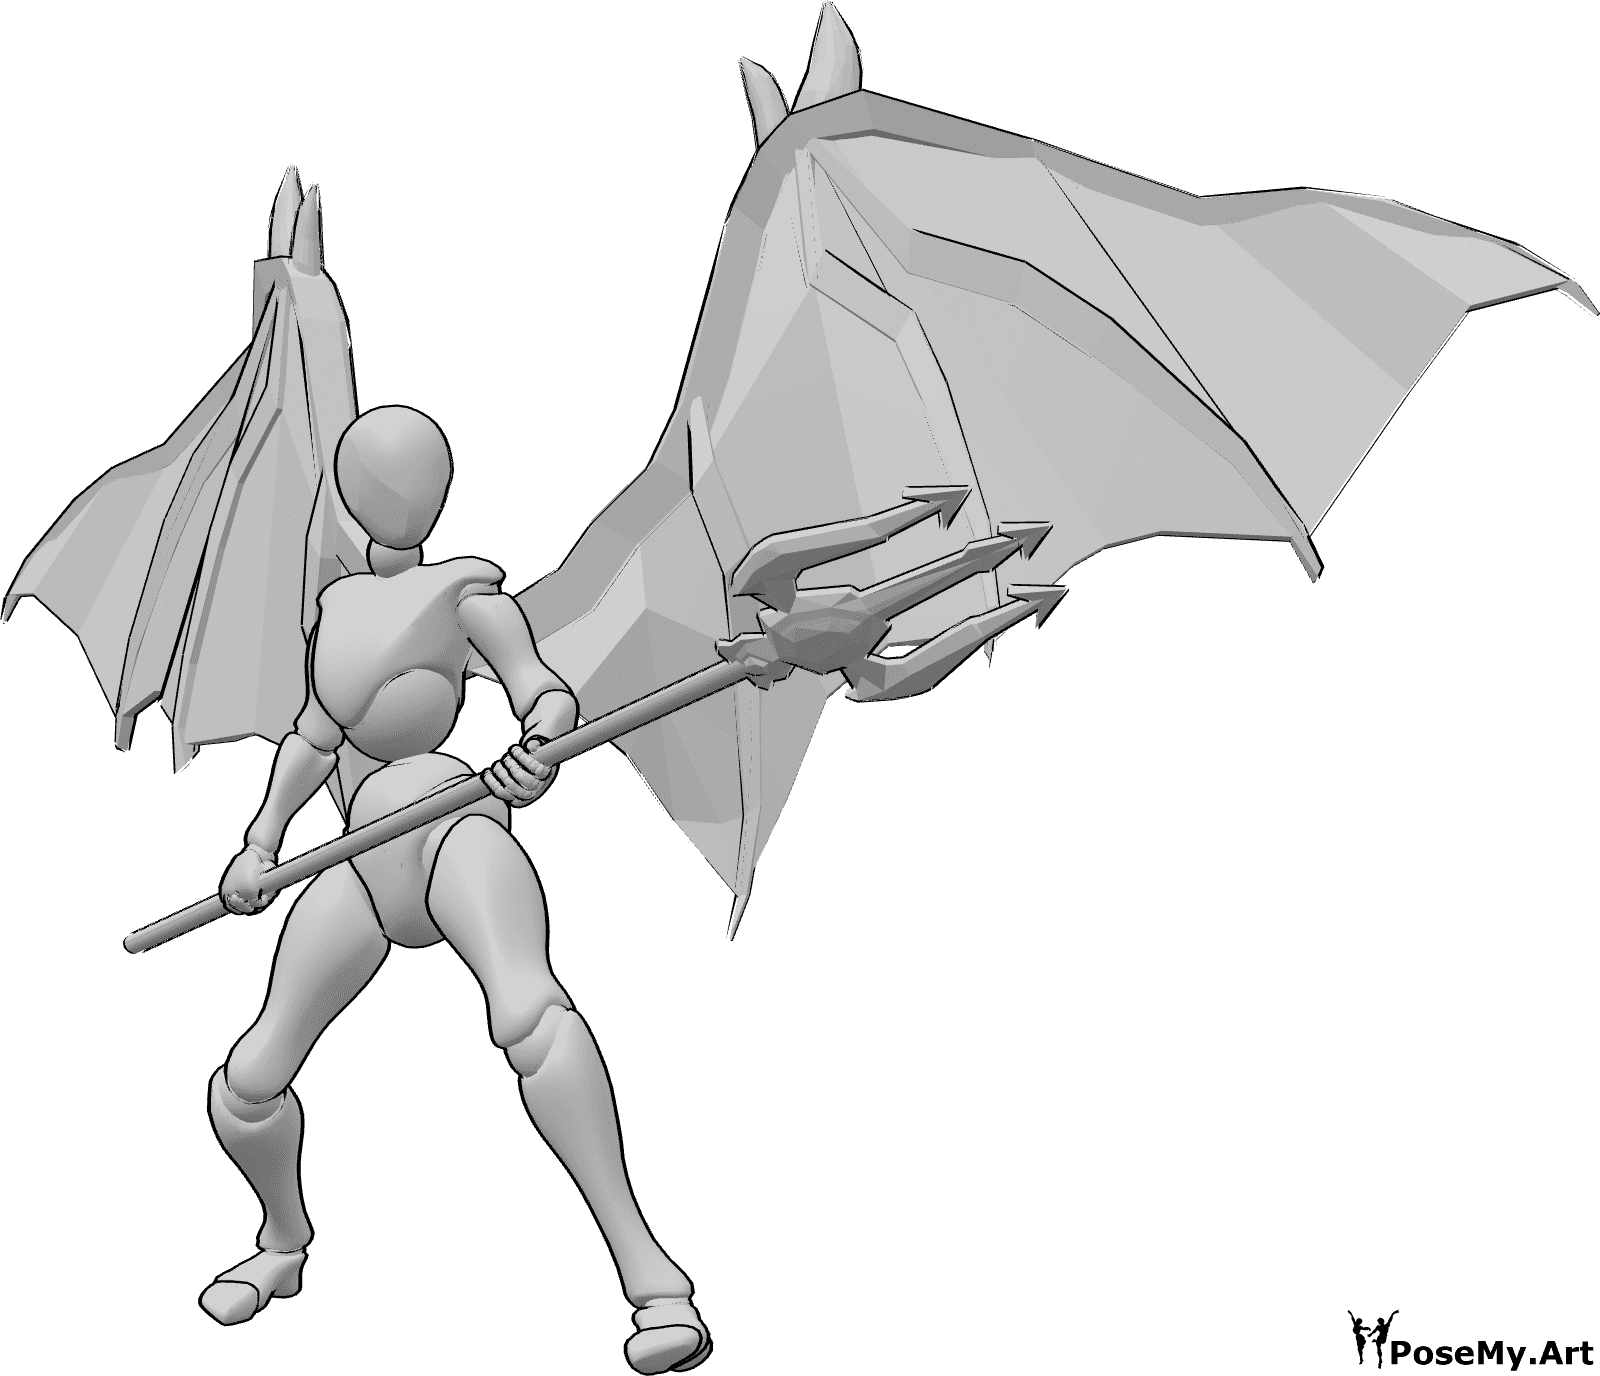 Référence des poses- Démon femelle, pose du trident - La femme aux ailes de diable s'apprête à attaquer avec son trident, qu'elle tient à deux mains en visant la gauche.